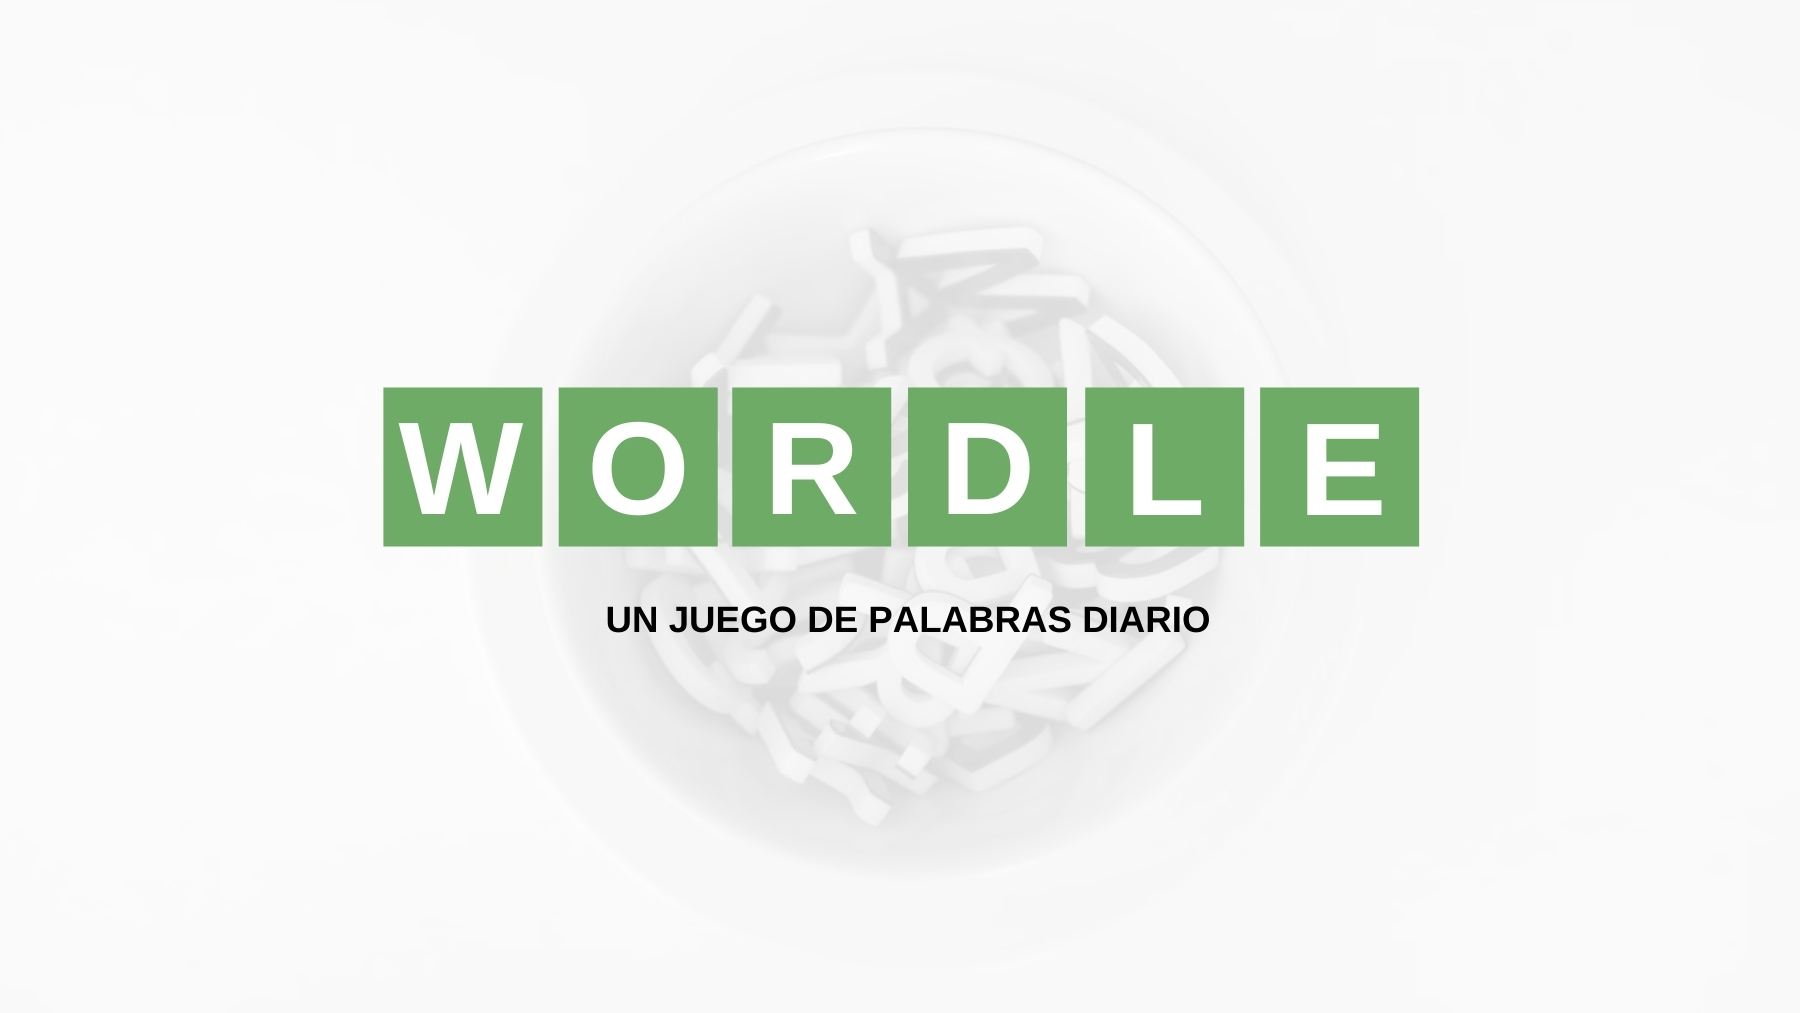 Palabra hoy Wordle, viernes 25 de marzo de 2022: Solución reto nº78